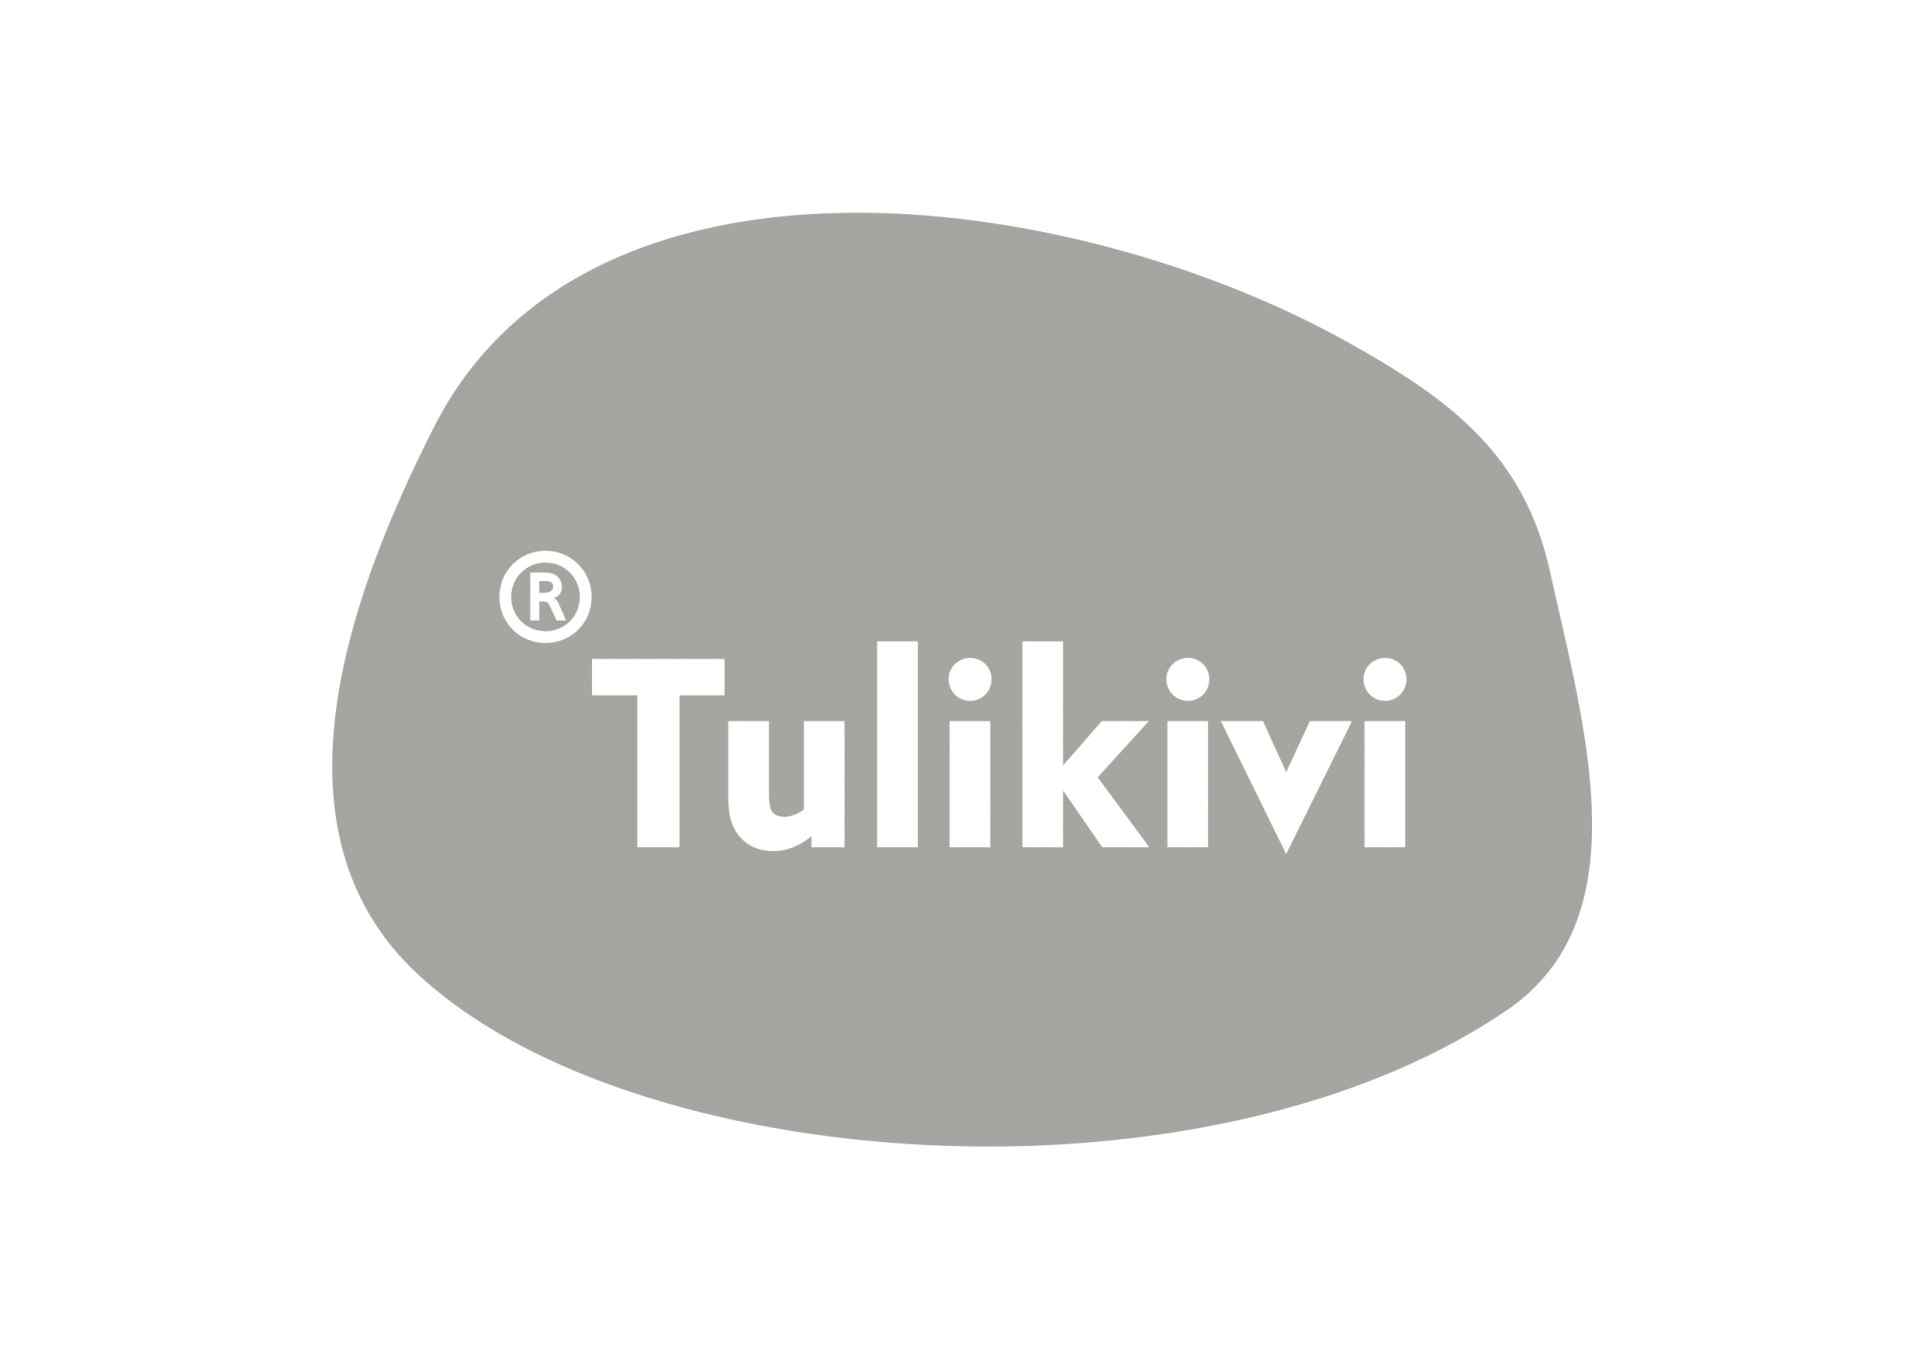 TulikiviUK Logo